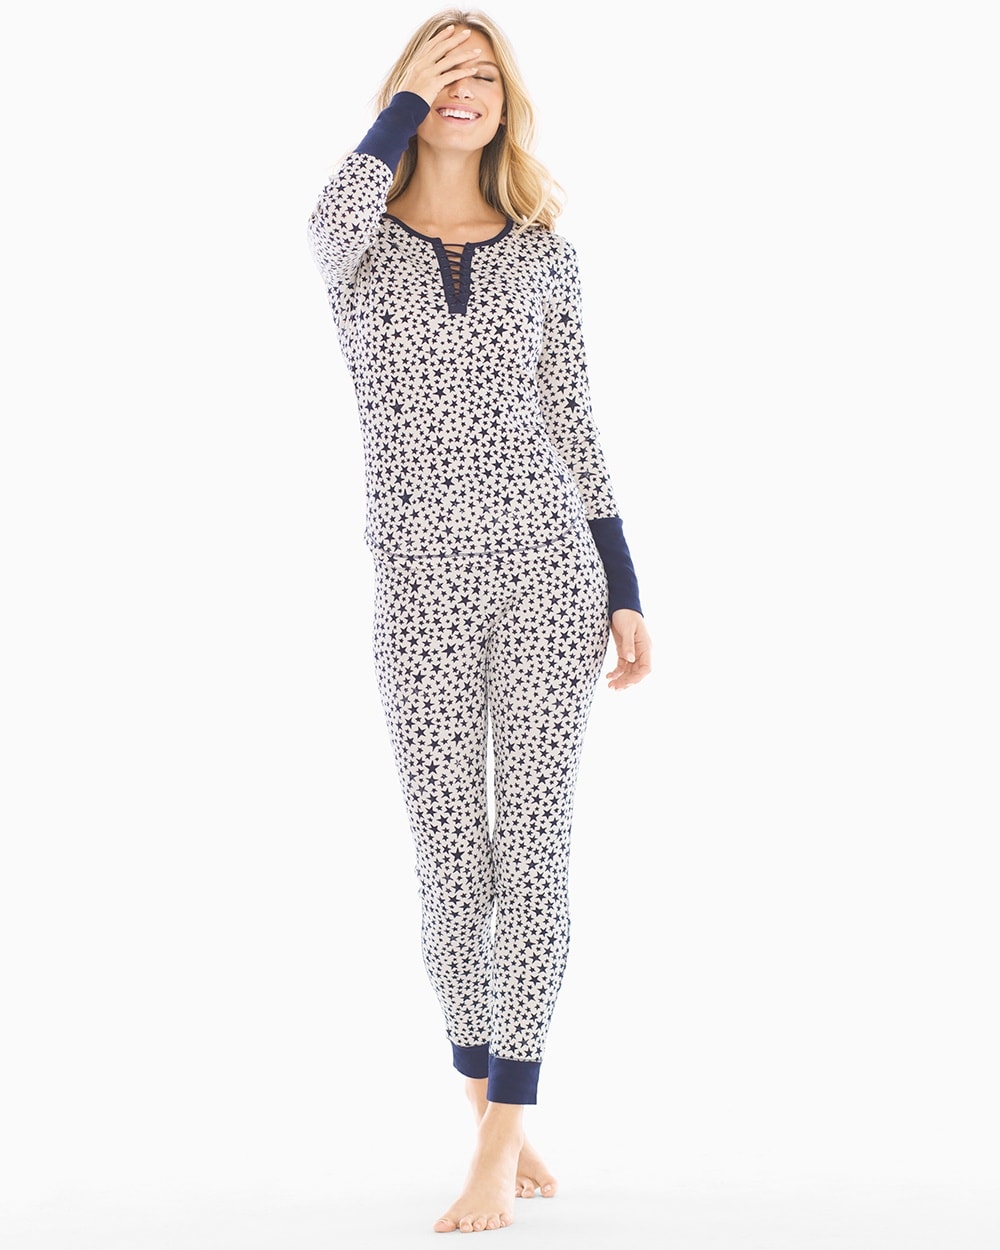 Splendid Holiday Long Sleeve Pajama Set Midnight Stars